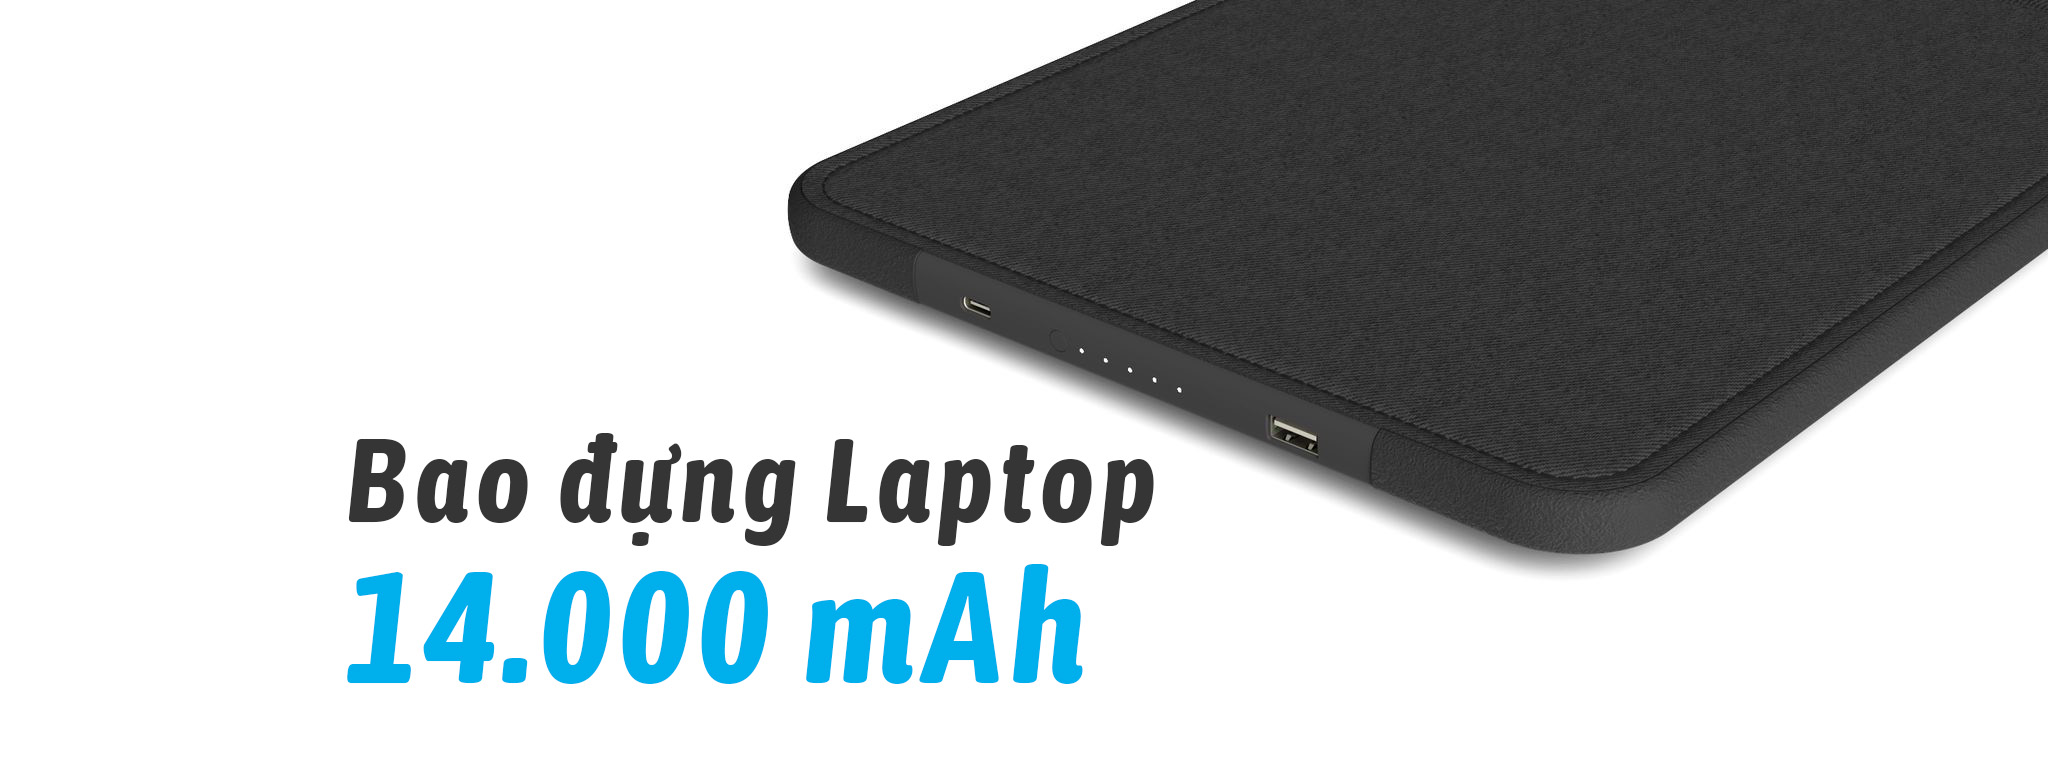 [CES18] Incase giới thiệu bao đựng laptop tích hợp pin dự phòng 14.000 mAh, giá 200 USD